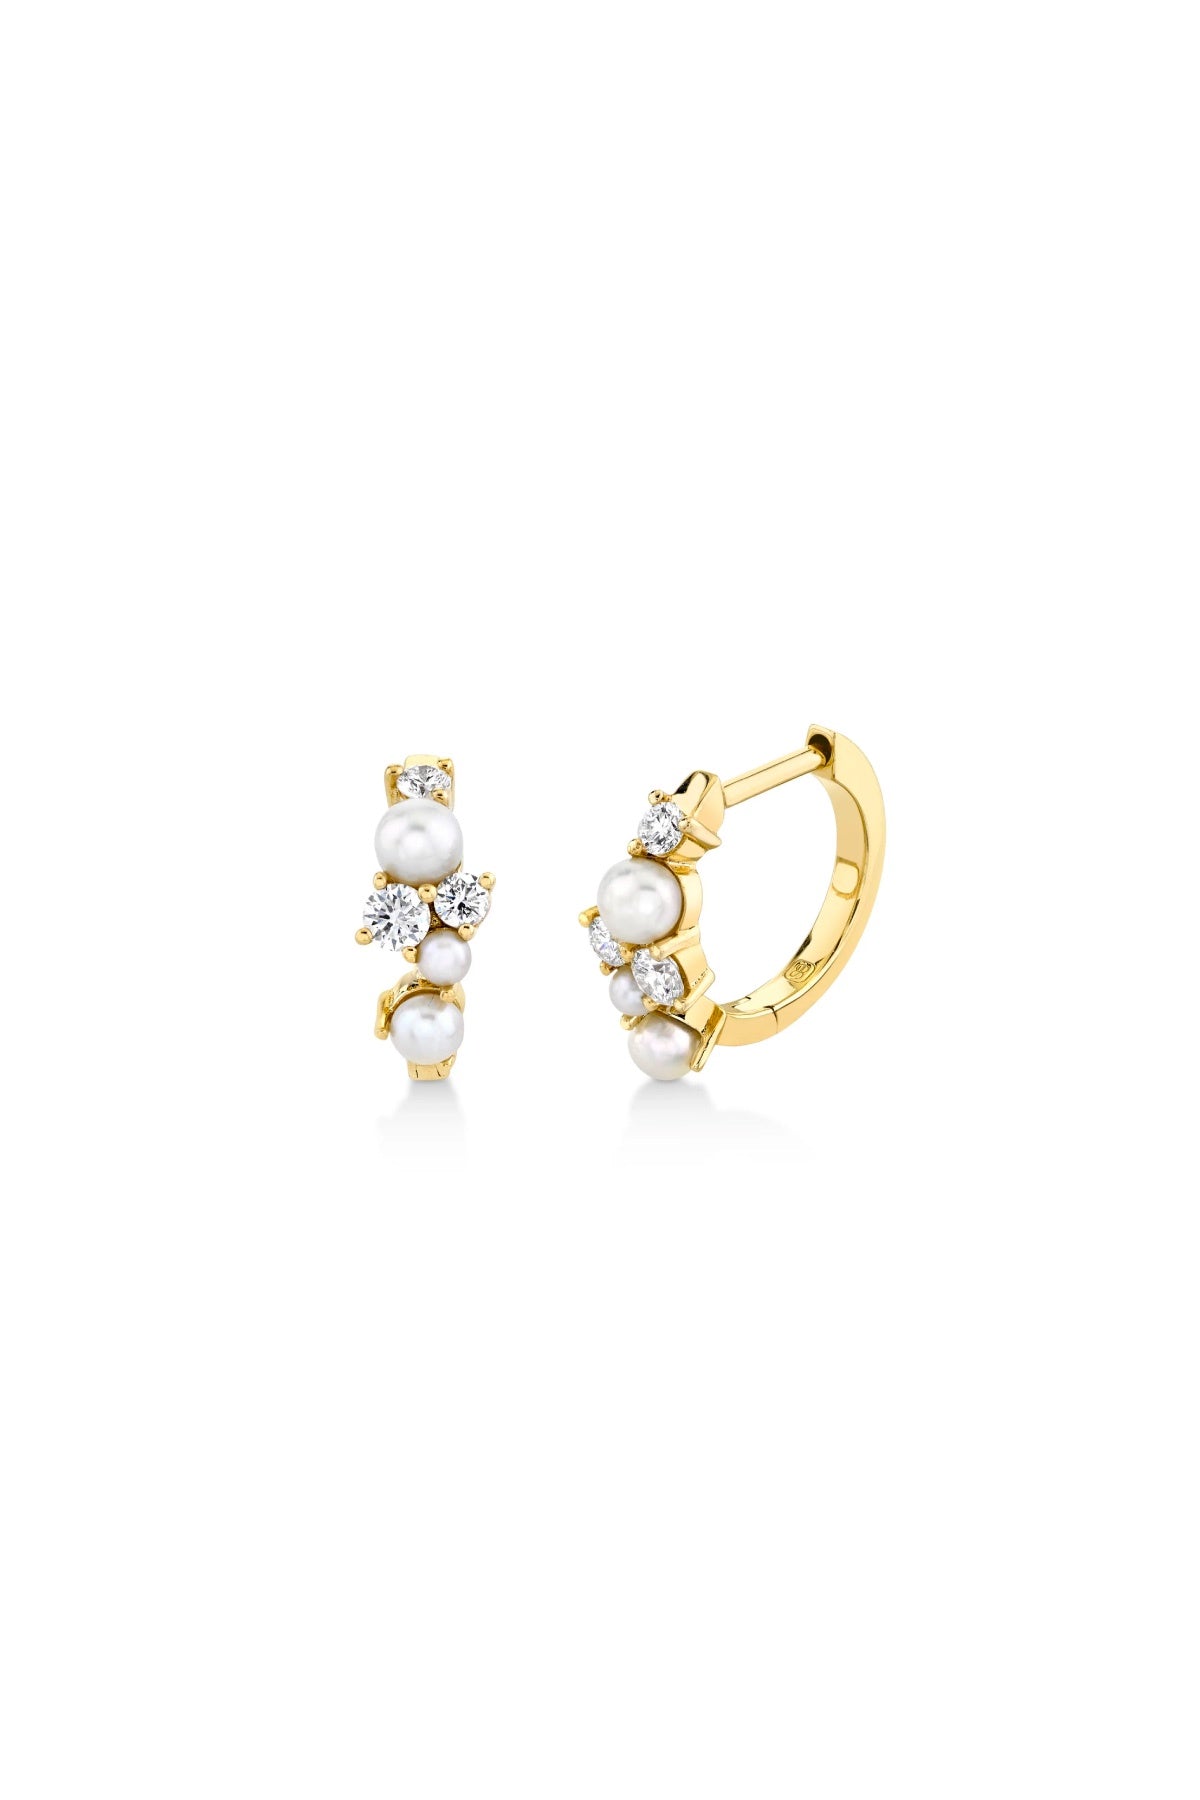 Sydney Evan Diamond & Pearl Cocktail Huggie Hoop Earrings - Yellow Gold